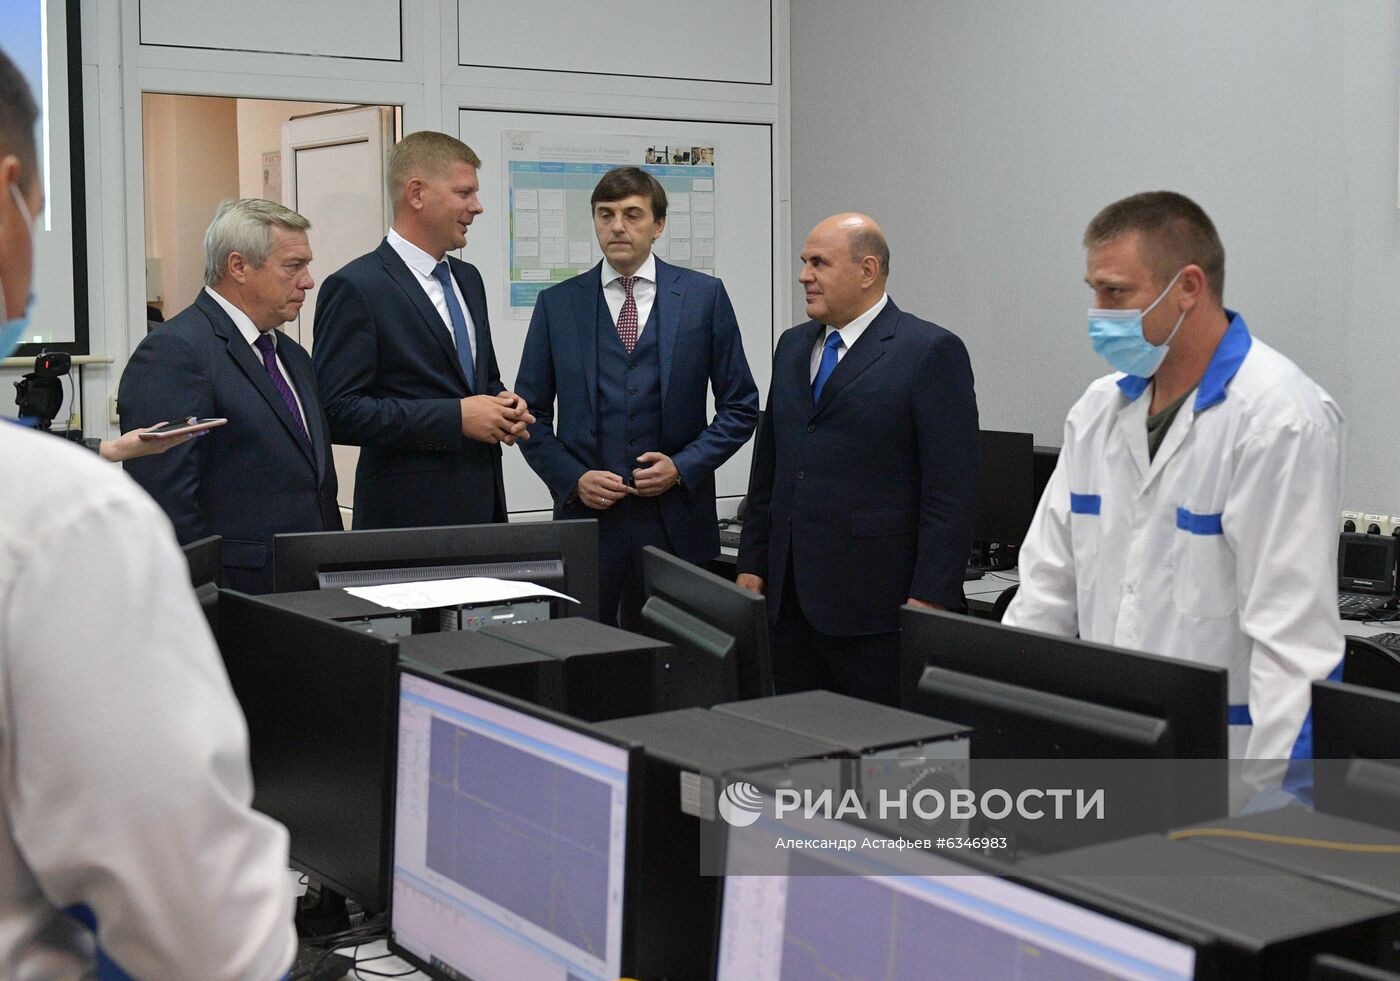 Рабочая поездка премьер-министра РФ М. Мишустина в Южный федеральный округ